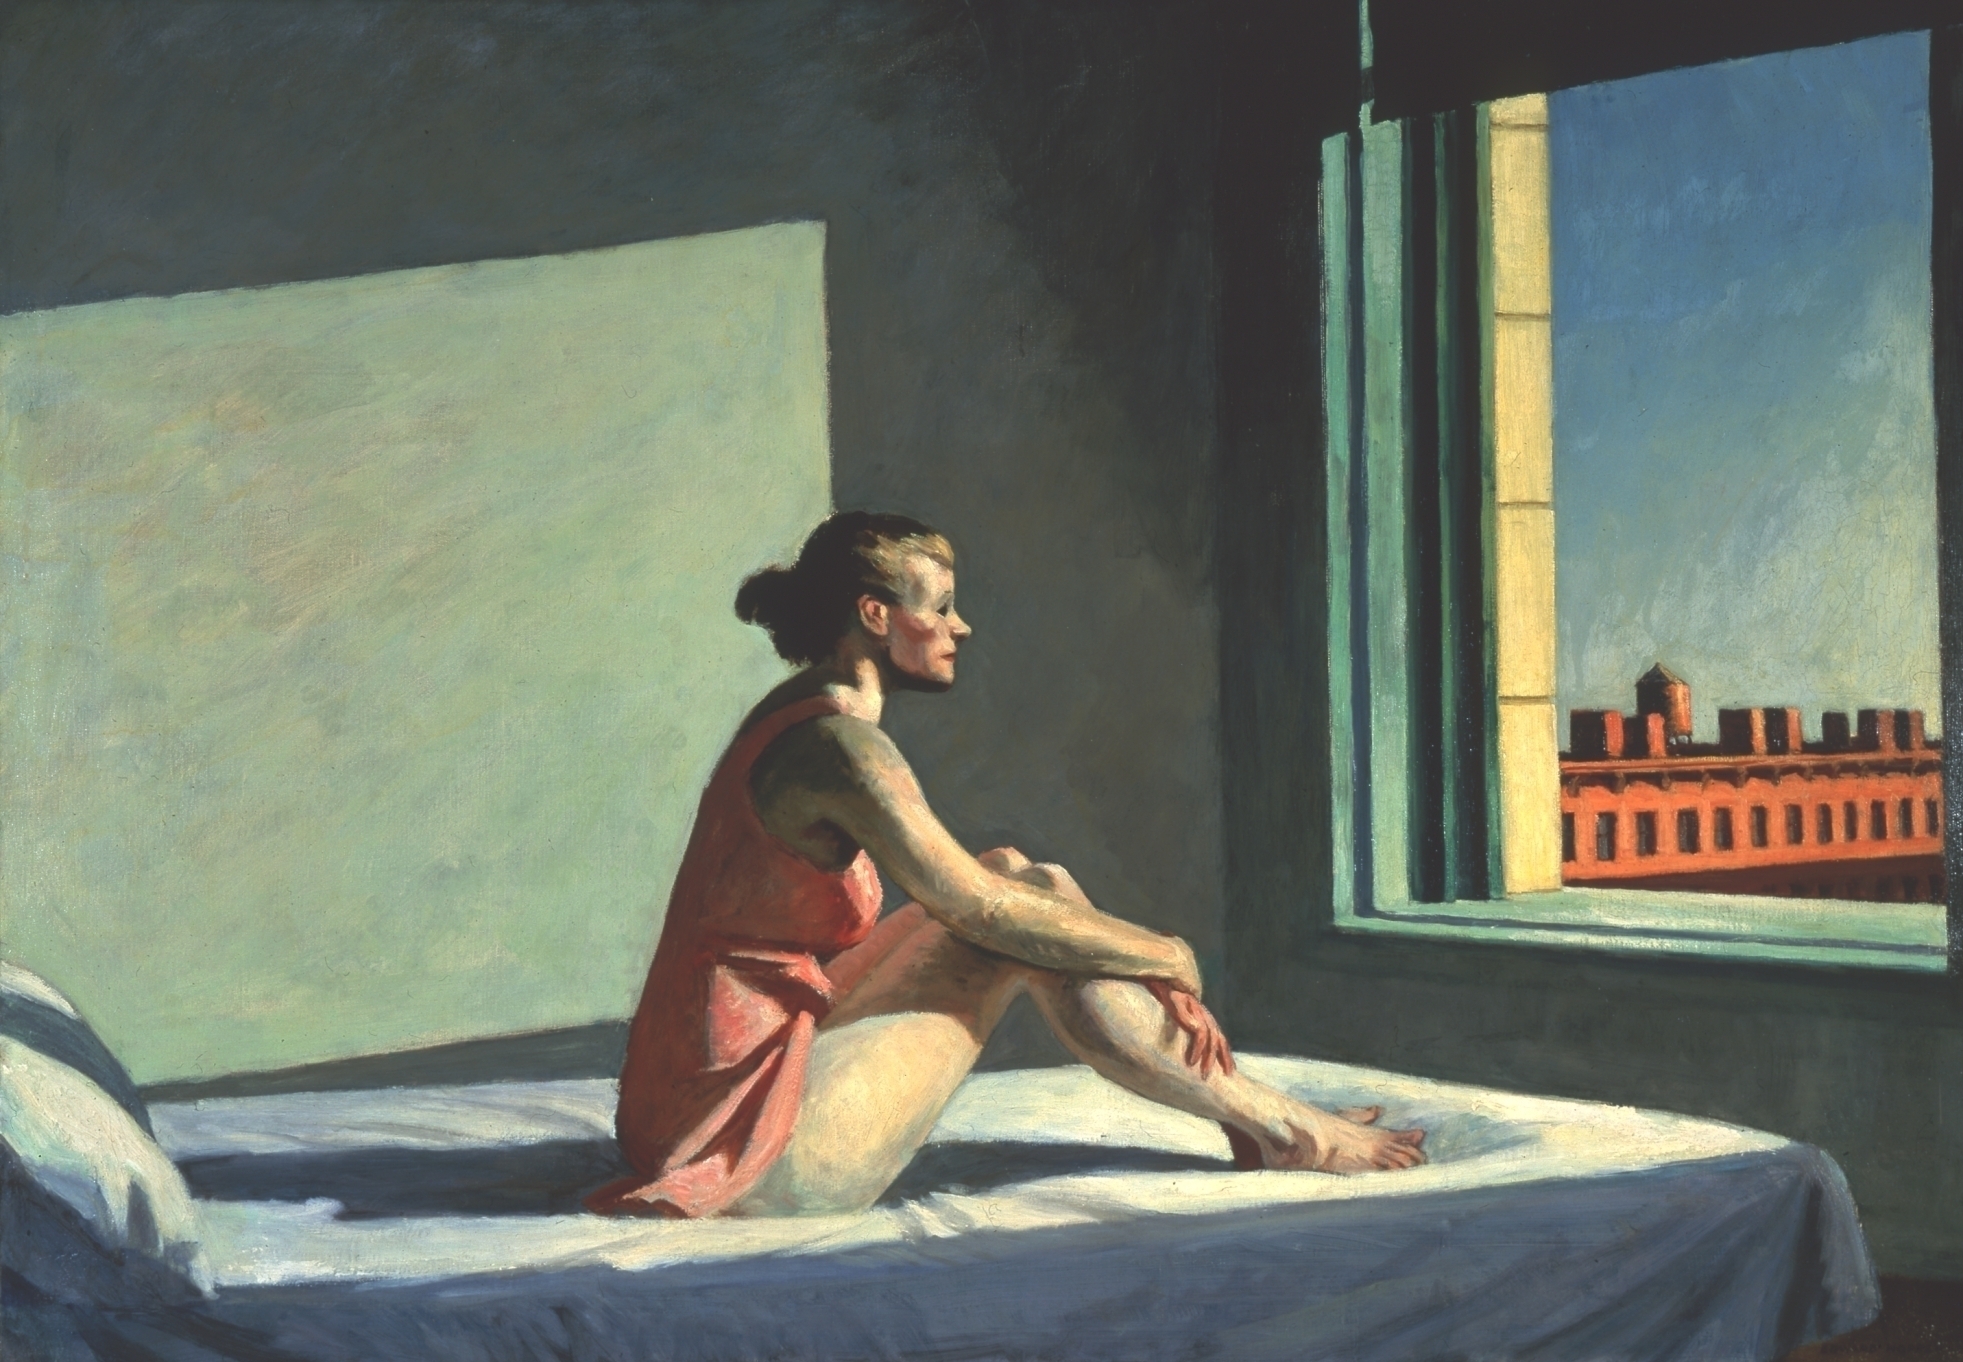 Soleil du matin by Edward Hopper - 1952 - 101.98 x 71.5 cm Columbus Museum of Art